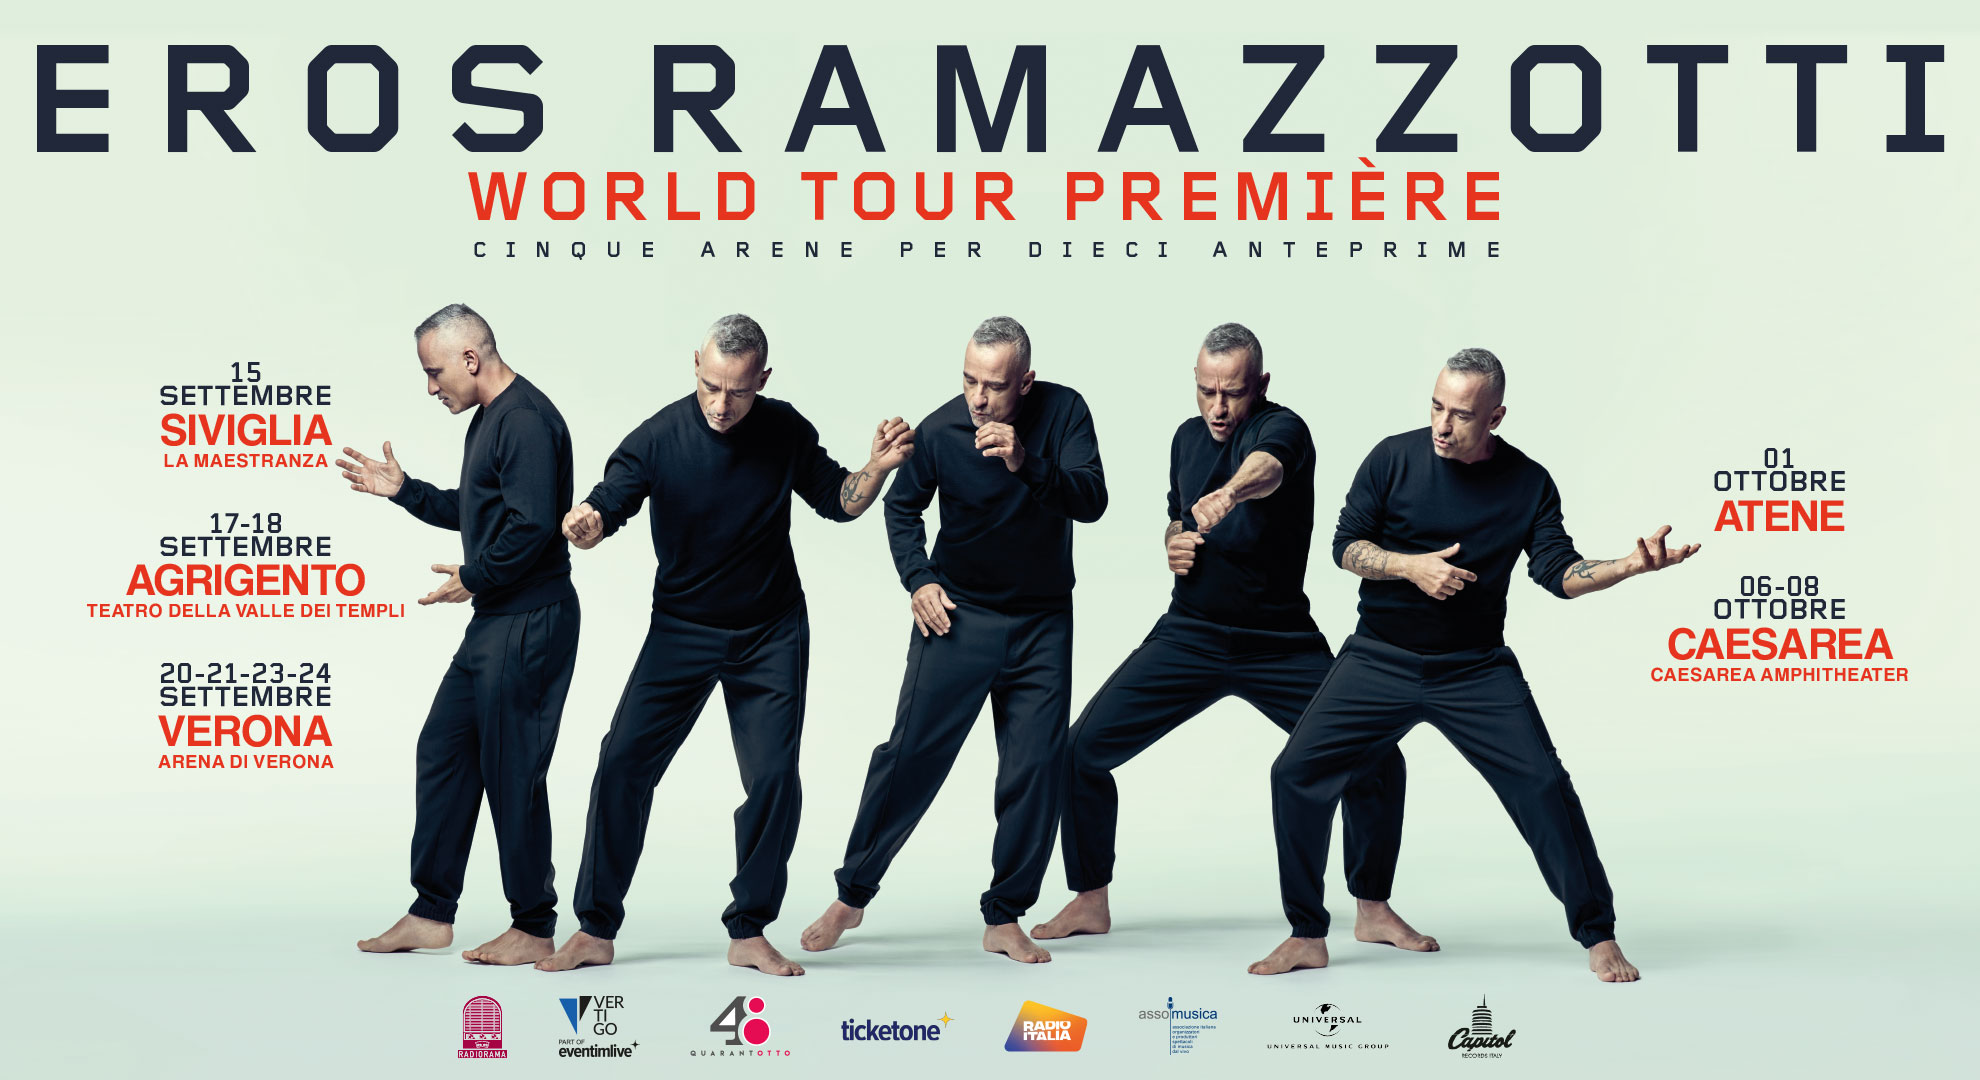 eros ramazzotti world tour 2010